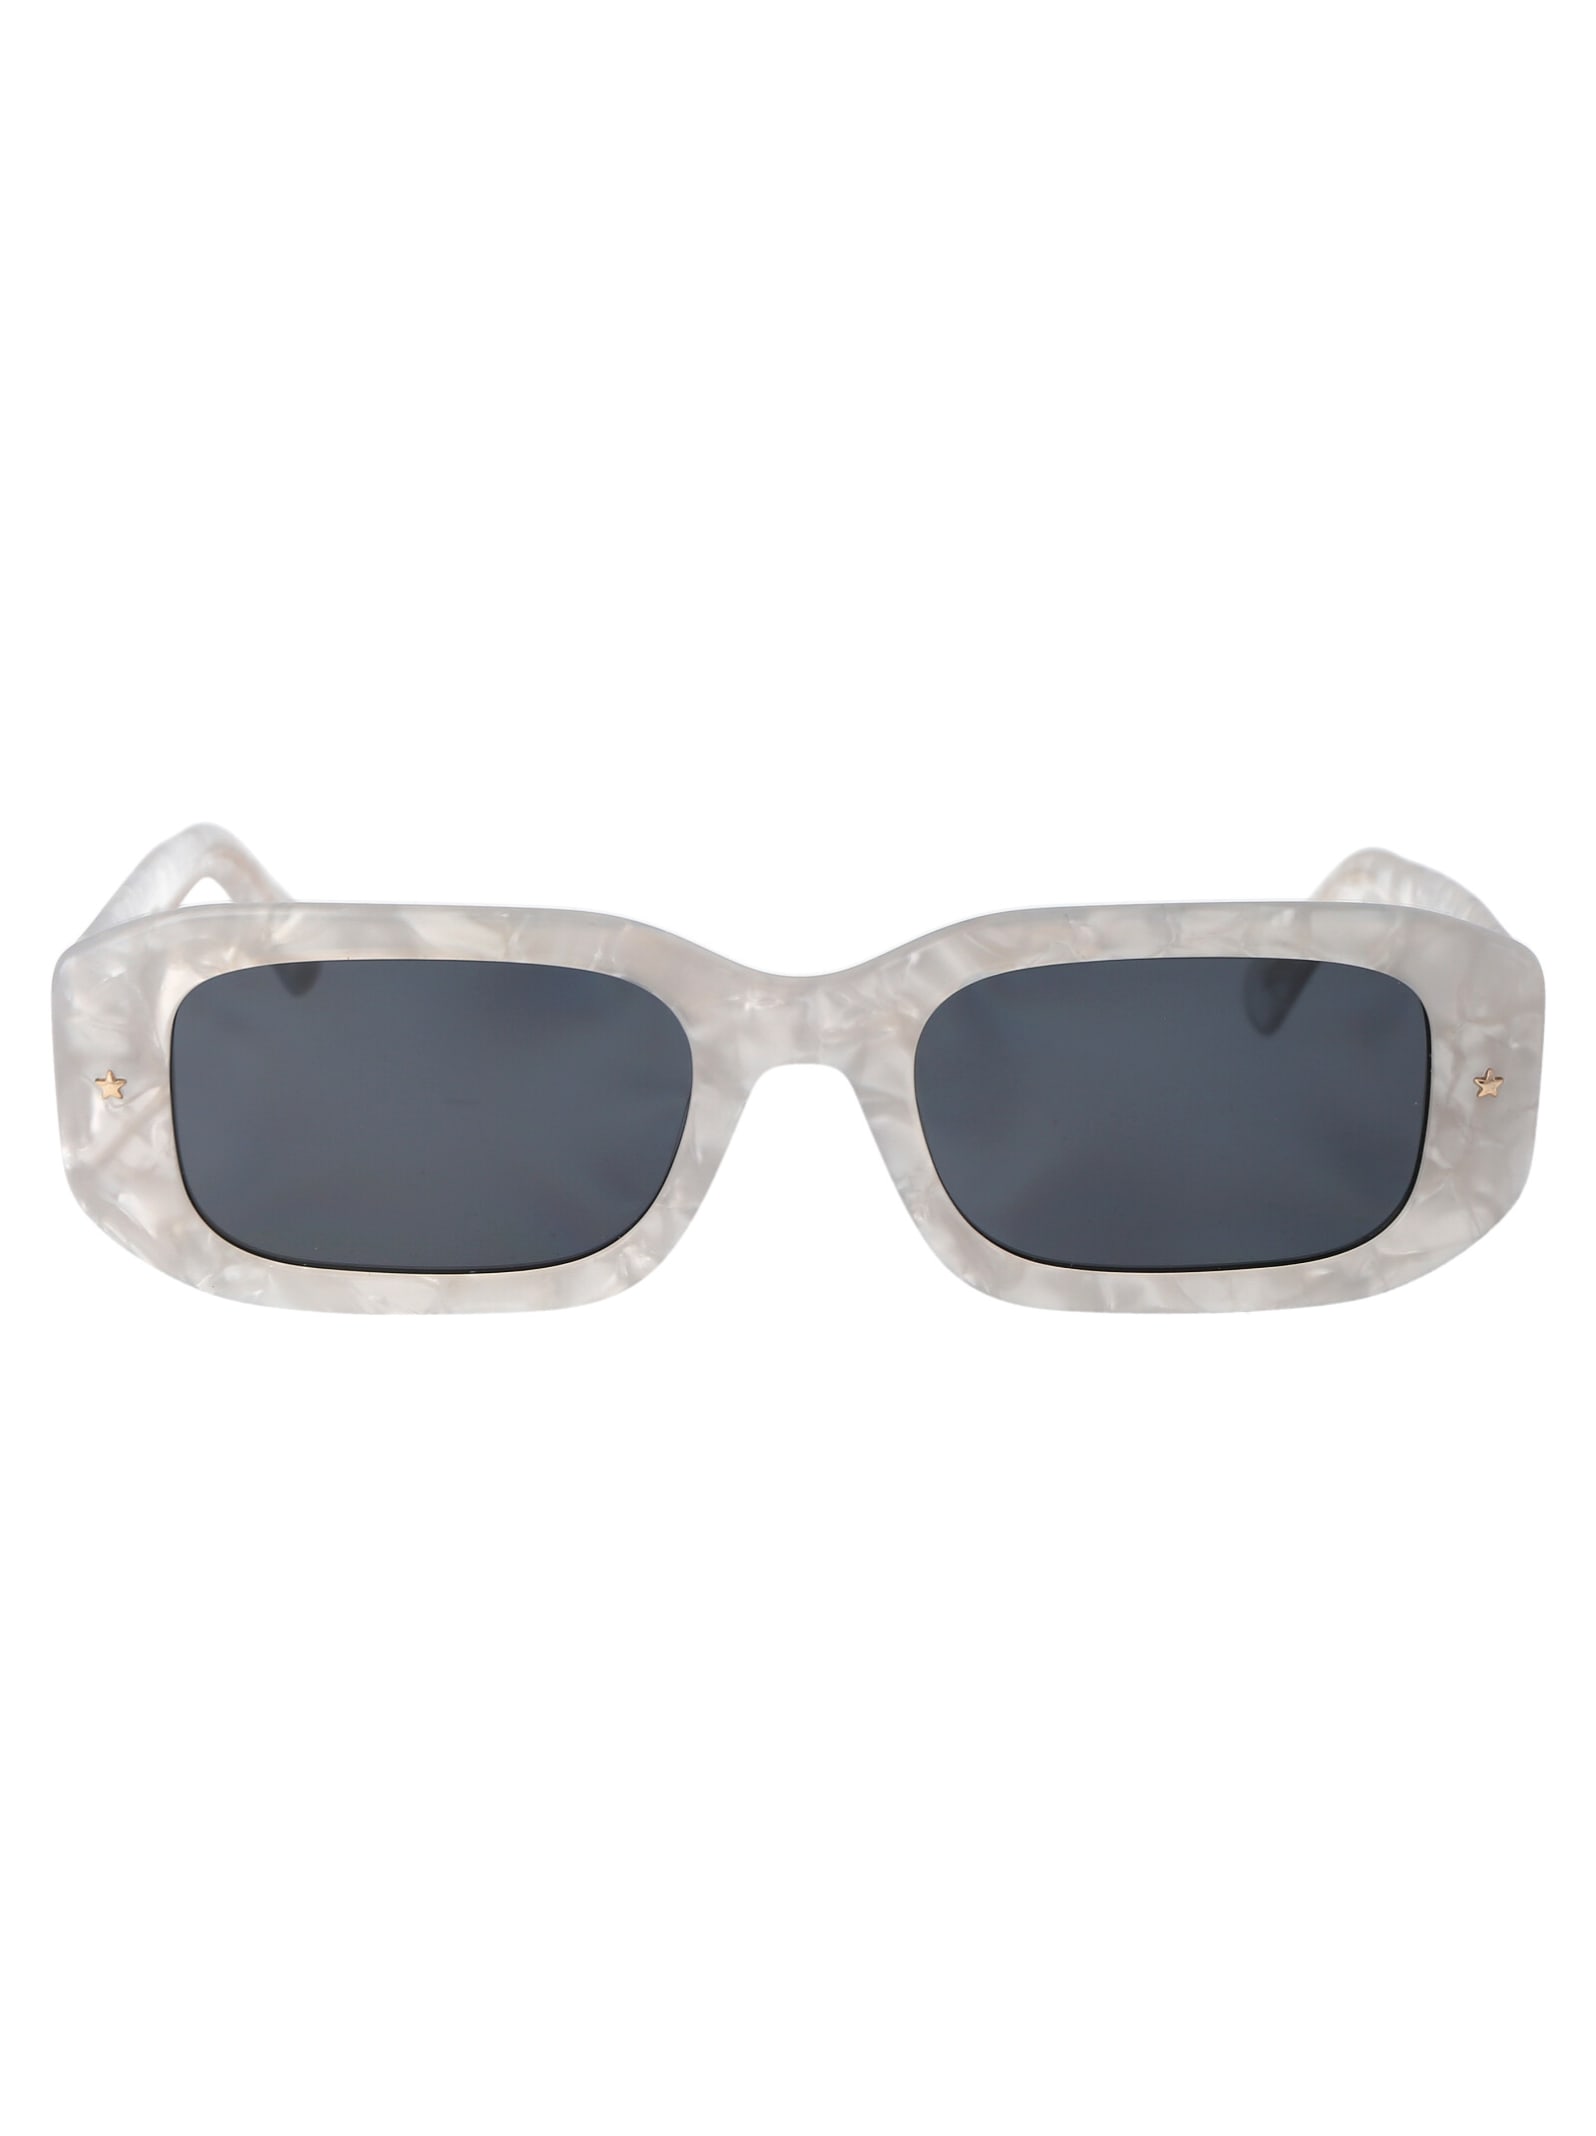 Shop Chiara Ferragni Cf 7031/s Sunglasses In 7apir Pearled White